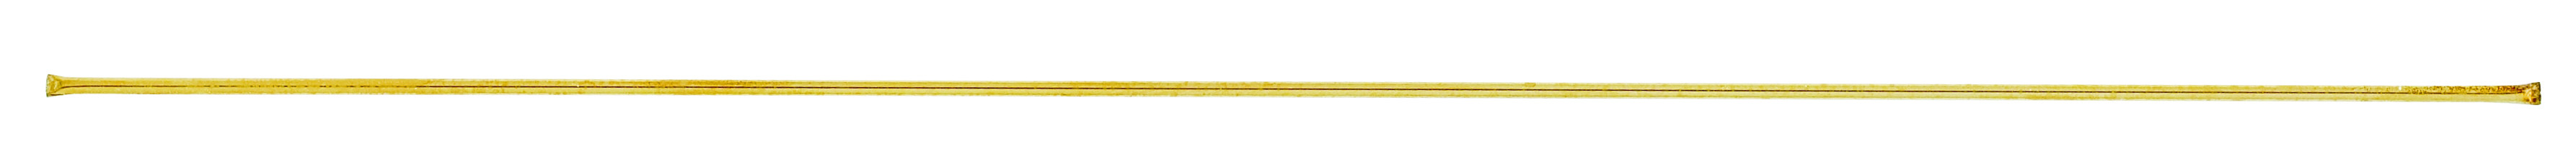 regular-gold-solder-4-tubes-017-45550-miltex.jpg